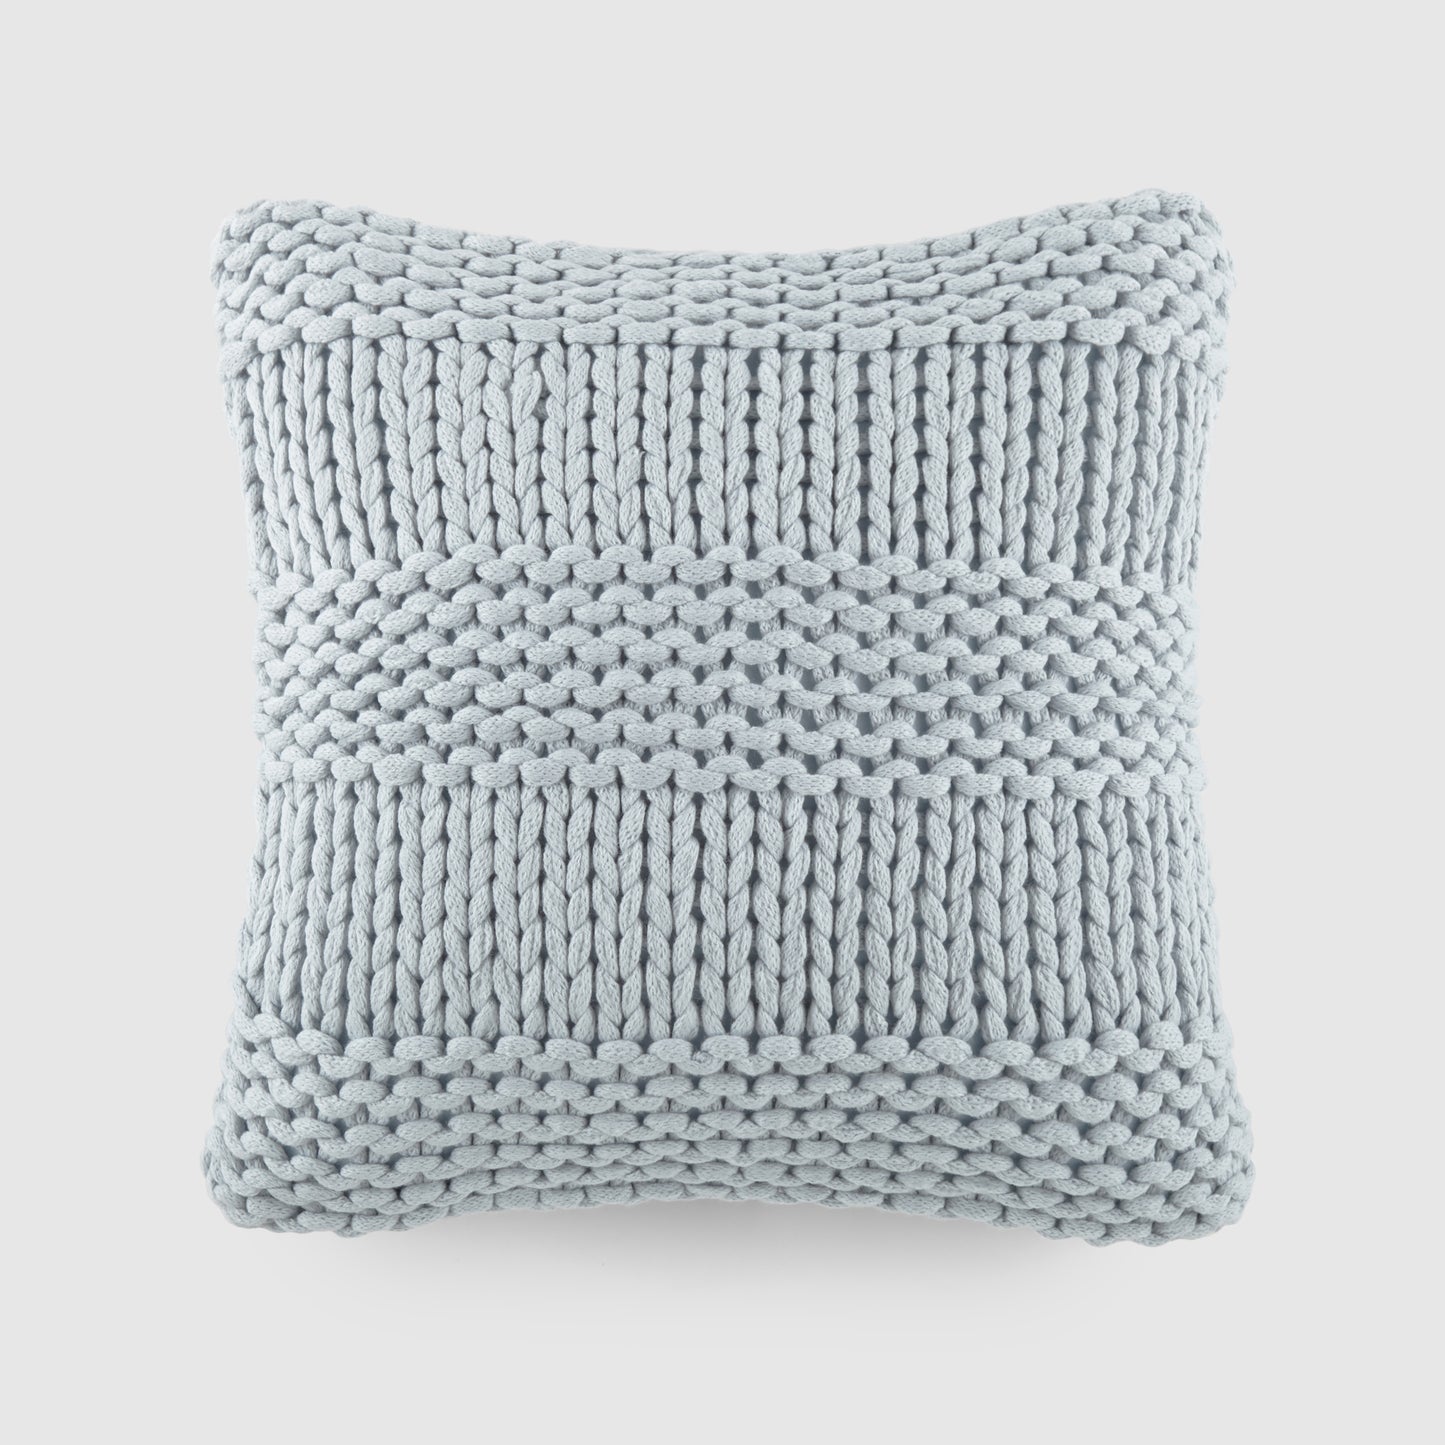 Cozy Chunky Knit Acrylic Decor Throw Pillow